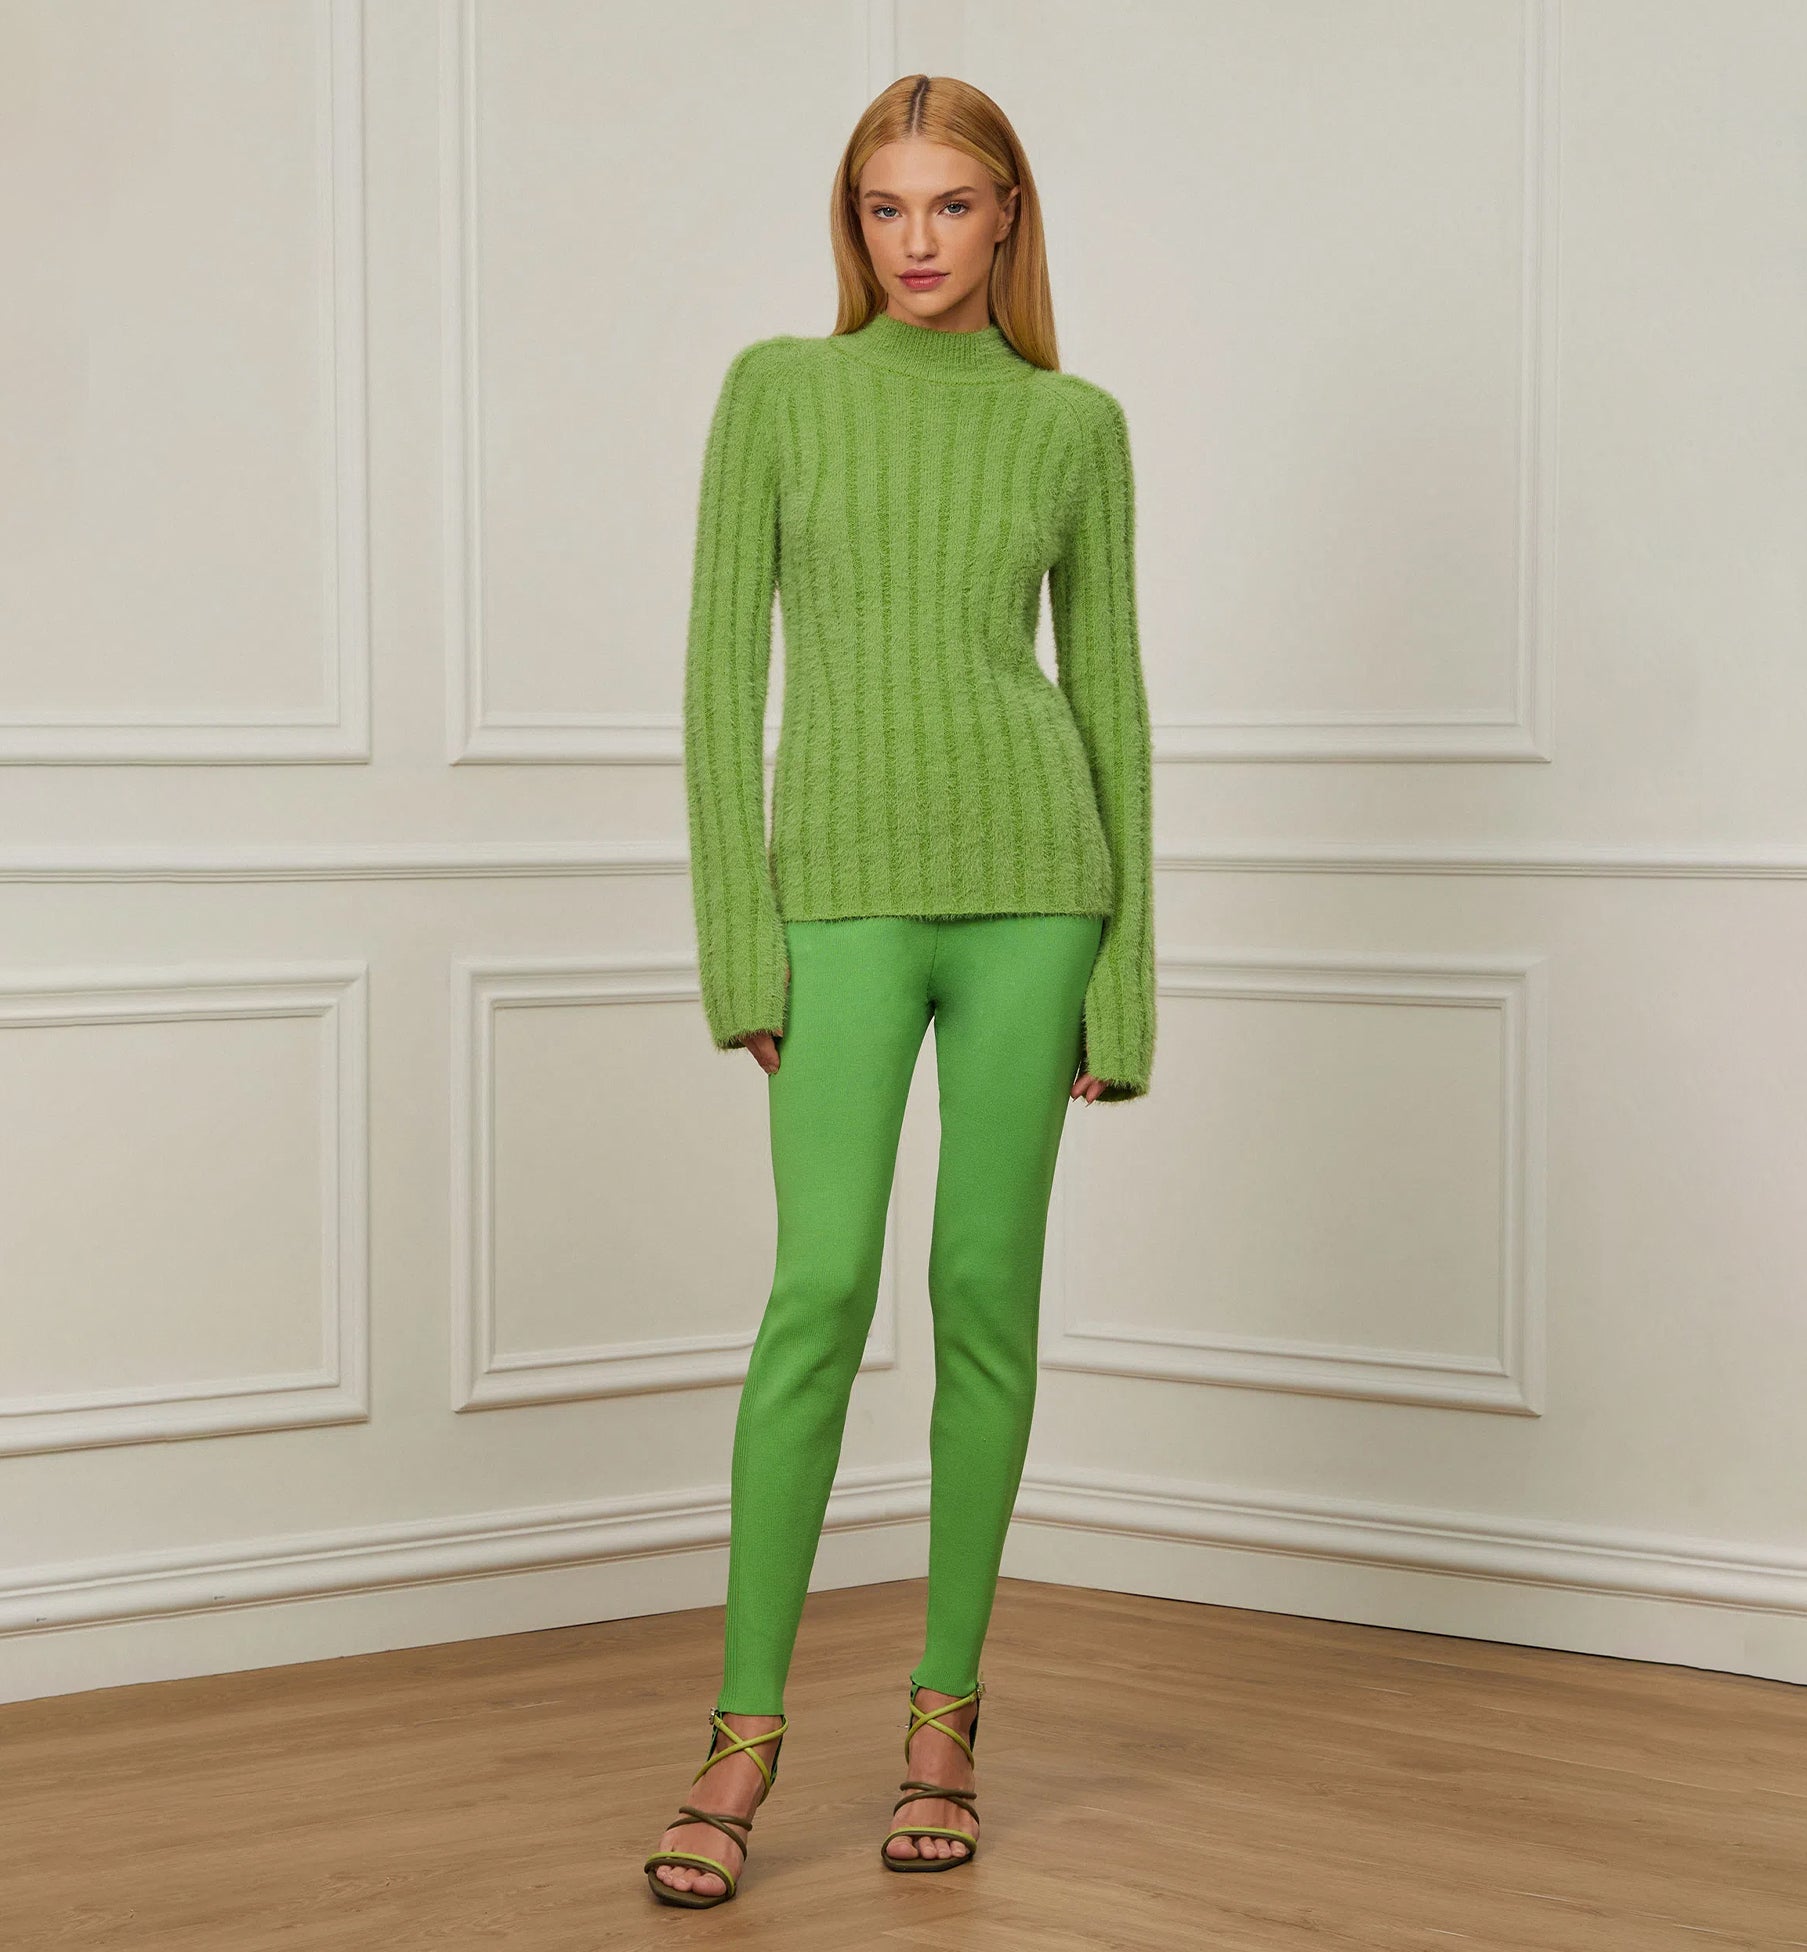 Gola Alta Green Sweater